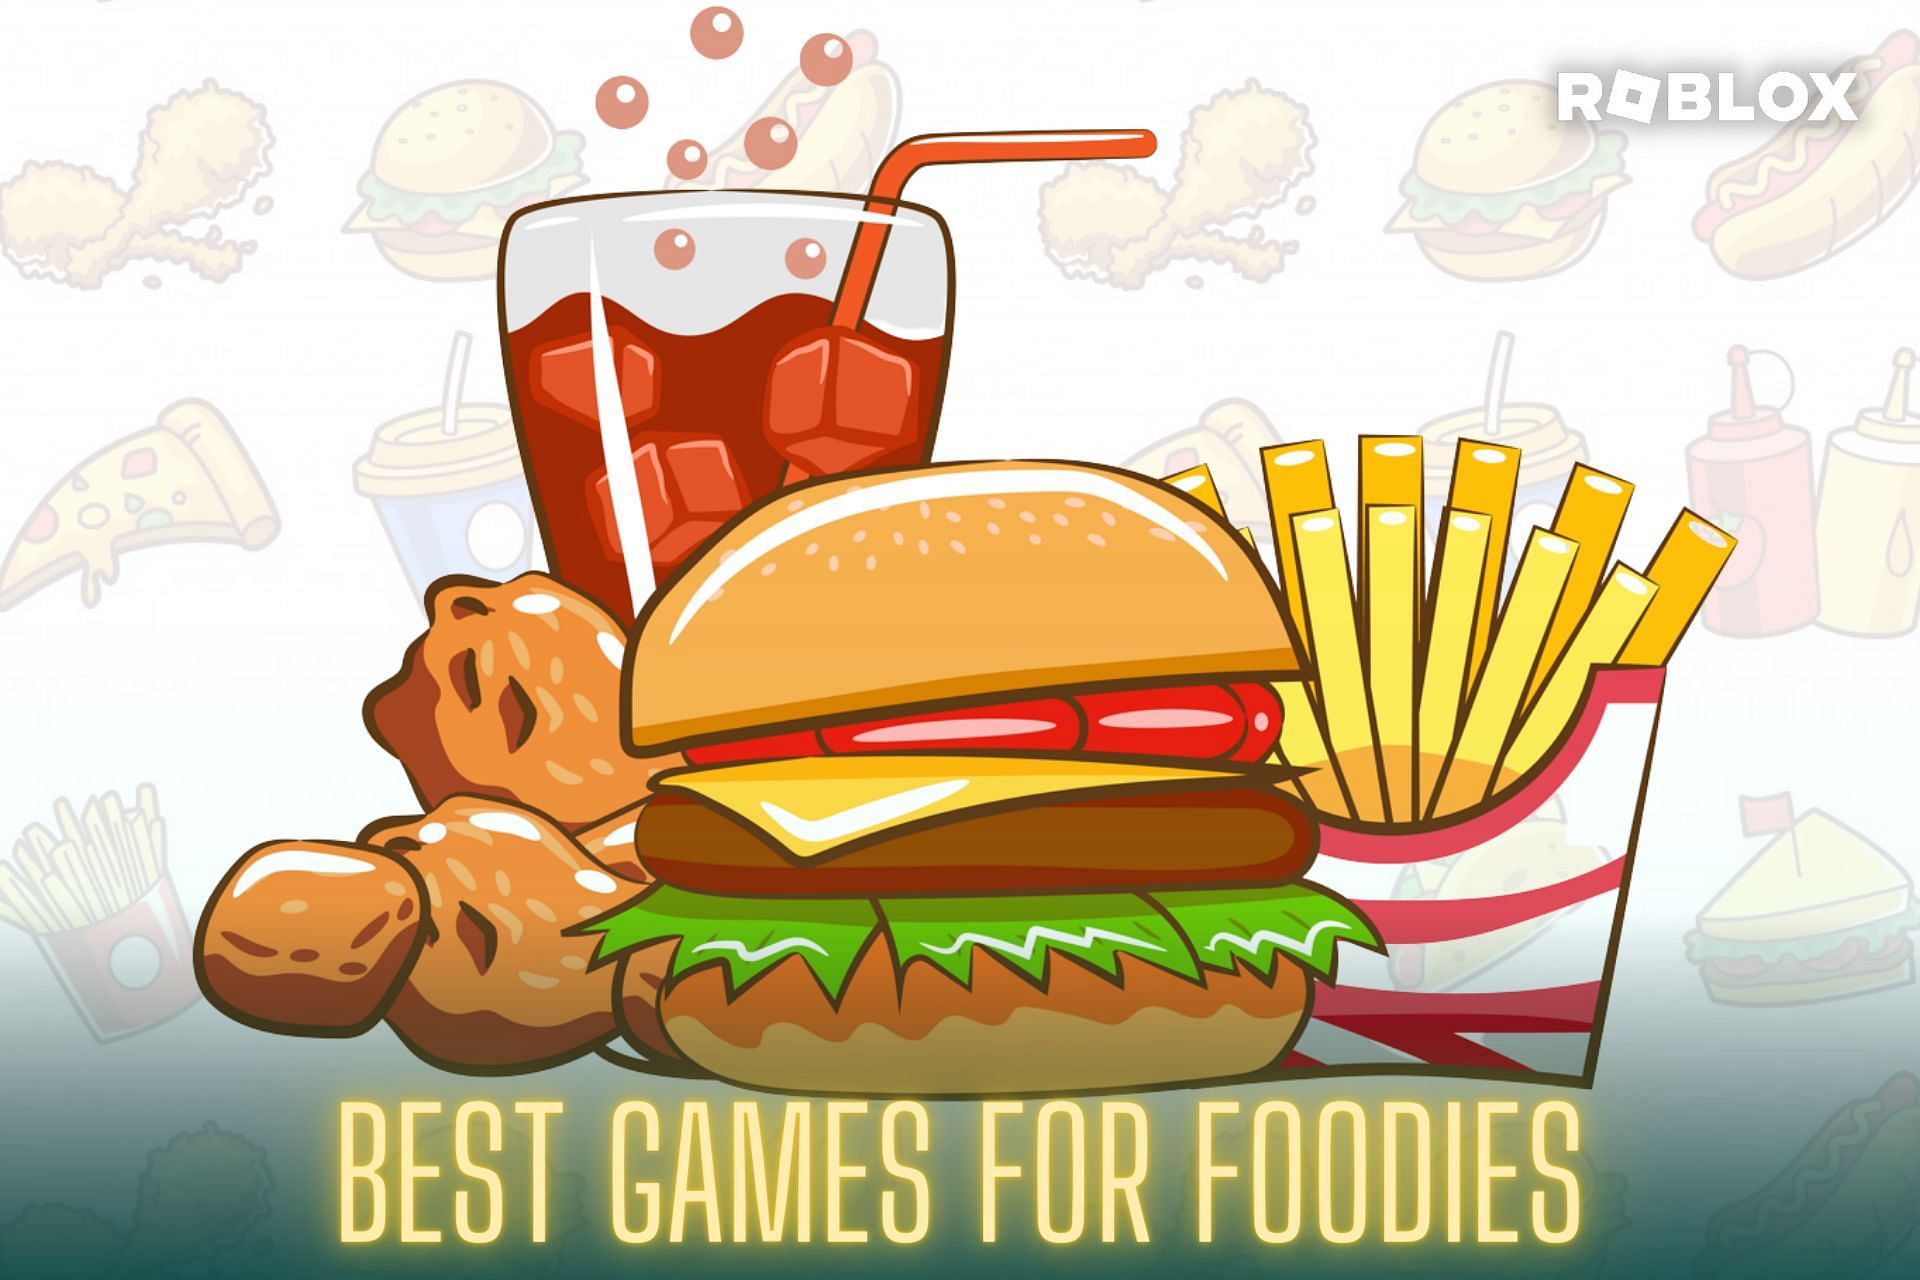 Enjoy these delicious food games in Roblox (Image via Sportskeeda)